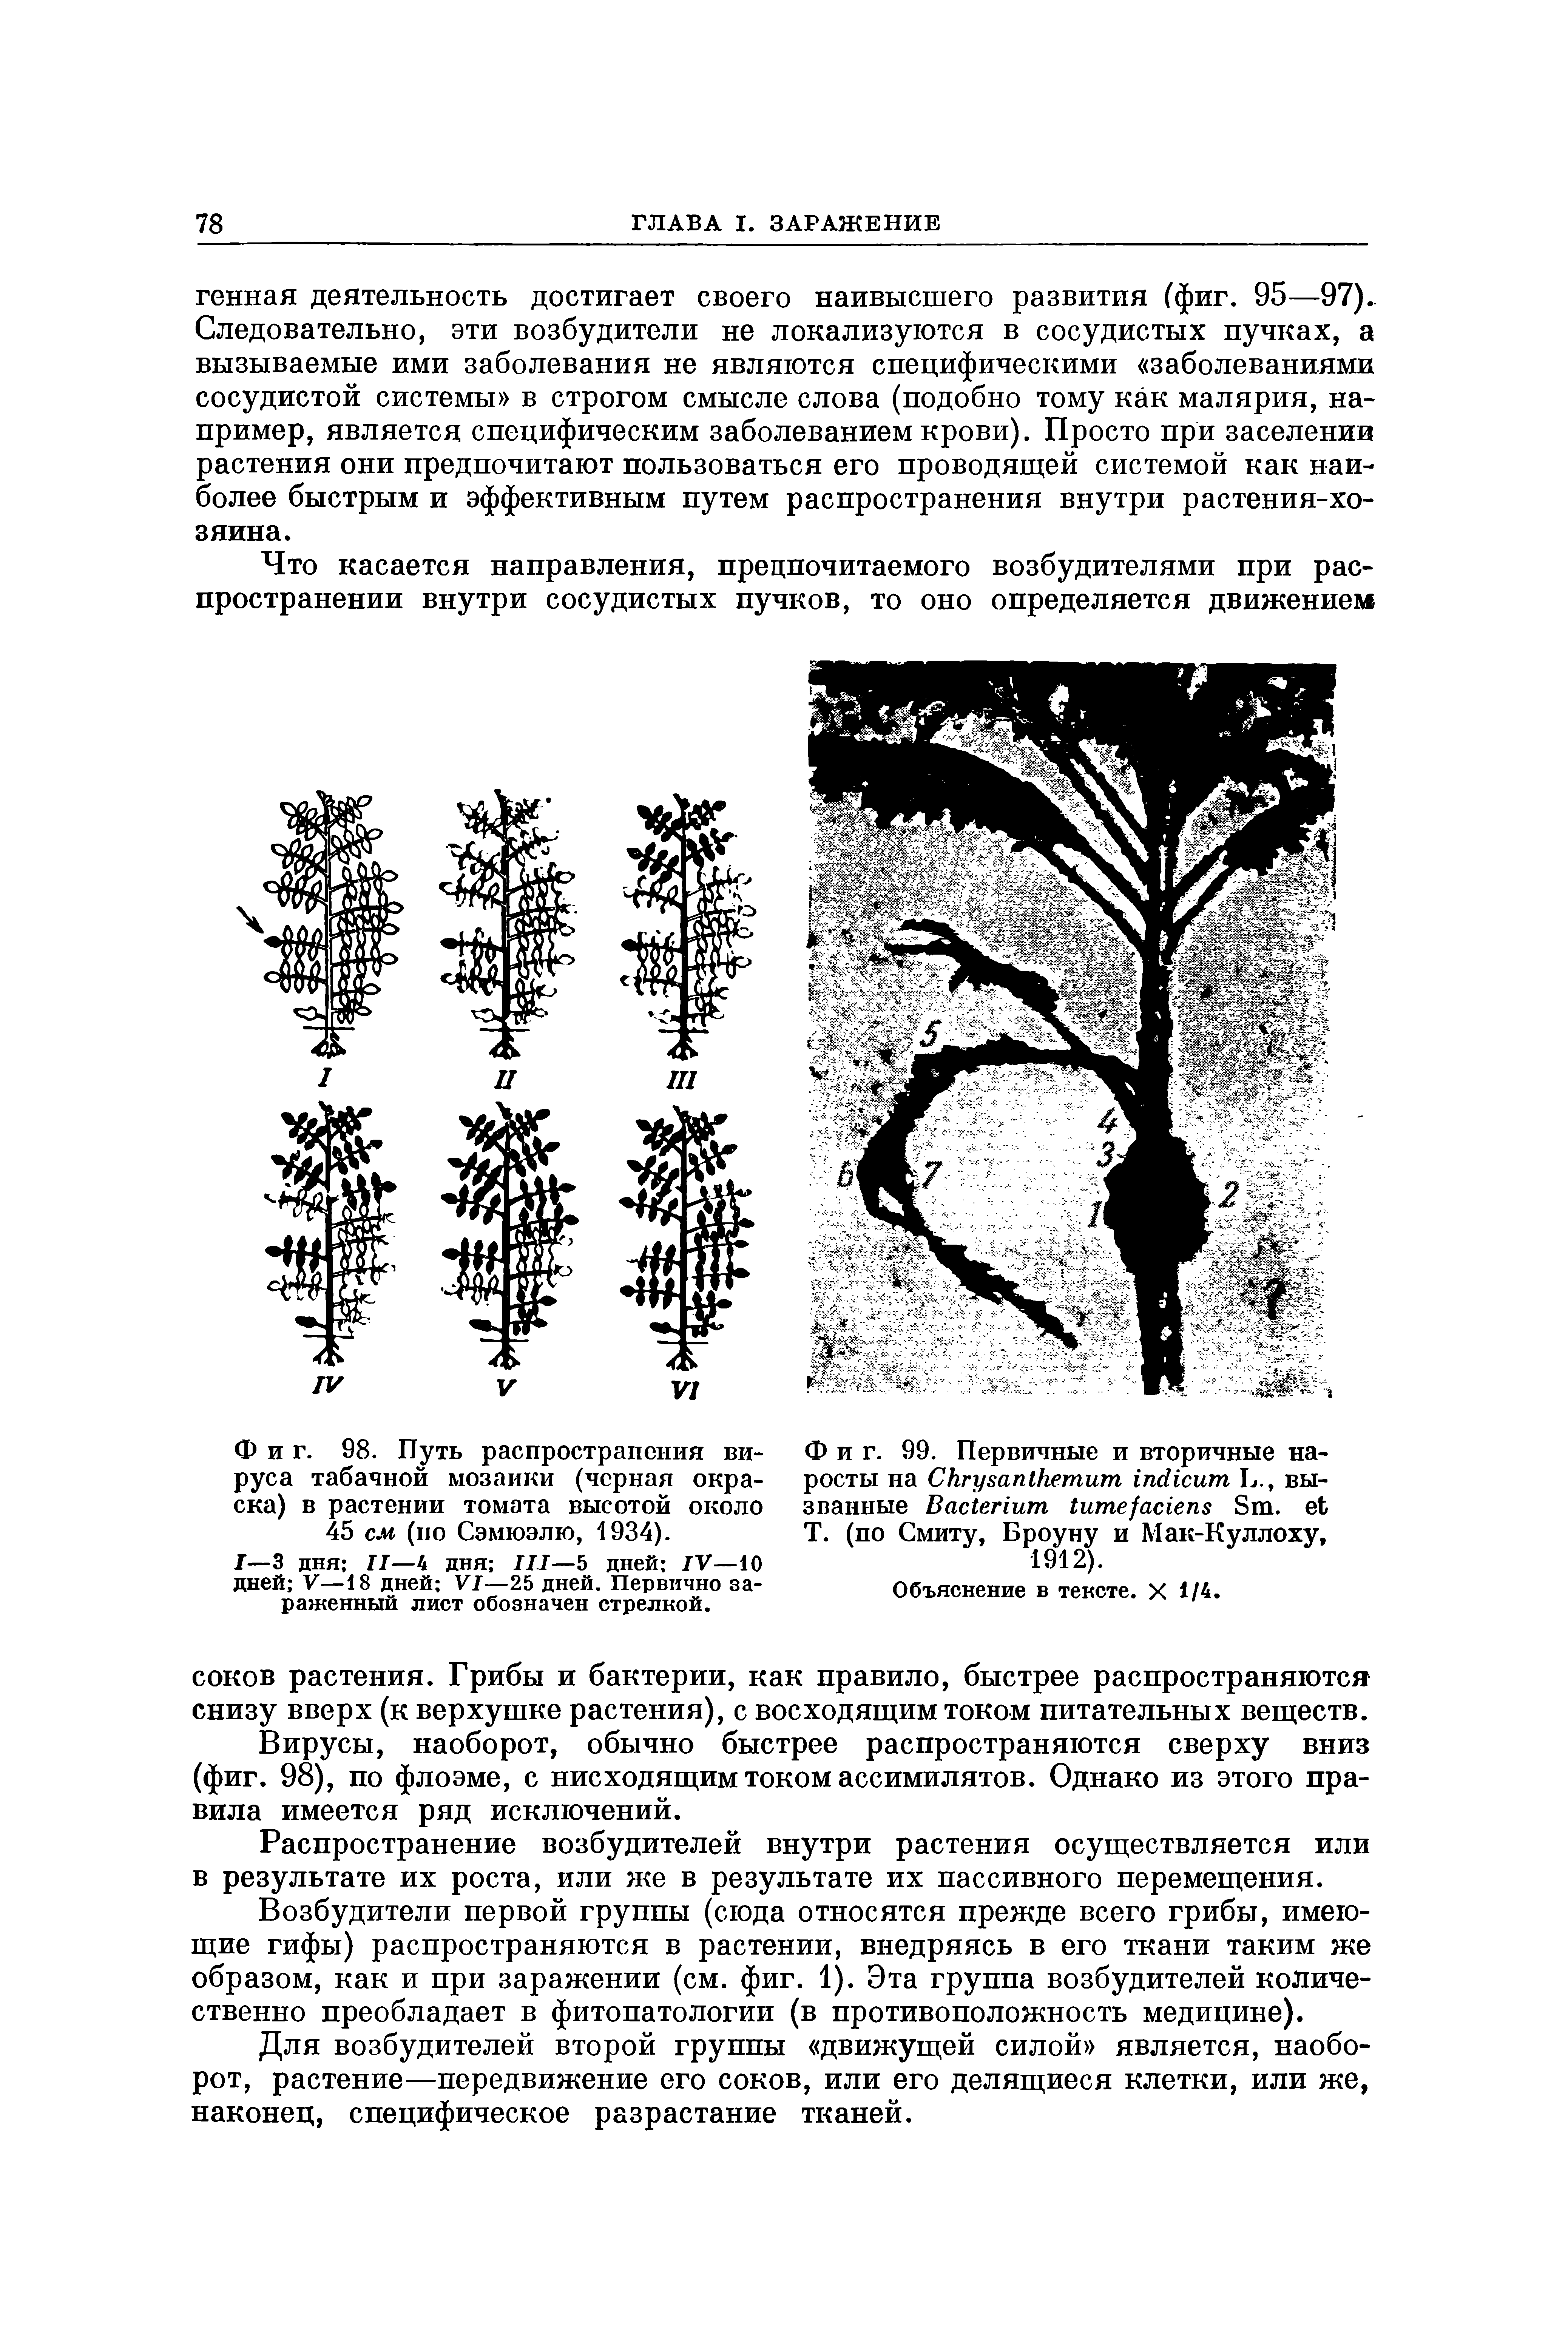 Фиг. 98. Путь распространения вируса табачной мозаики (черная окраска) в растении томата высотой около 45 см (по Сэмюэлю, 1934).